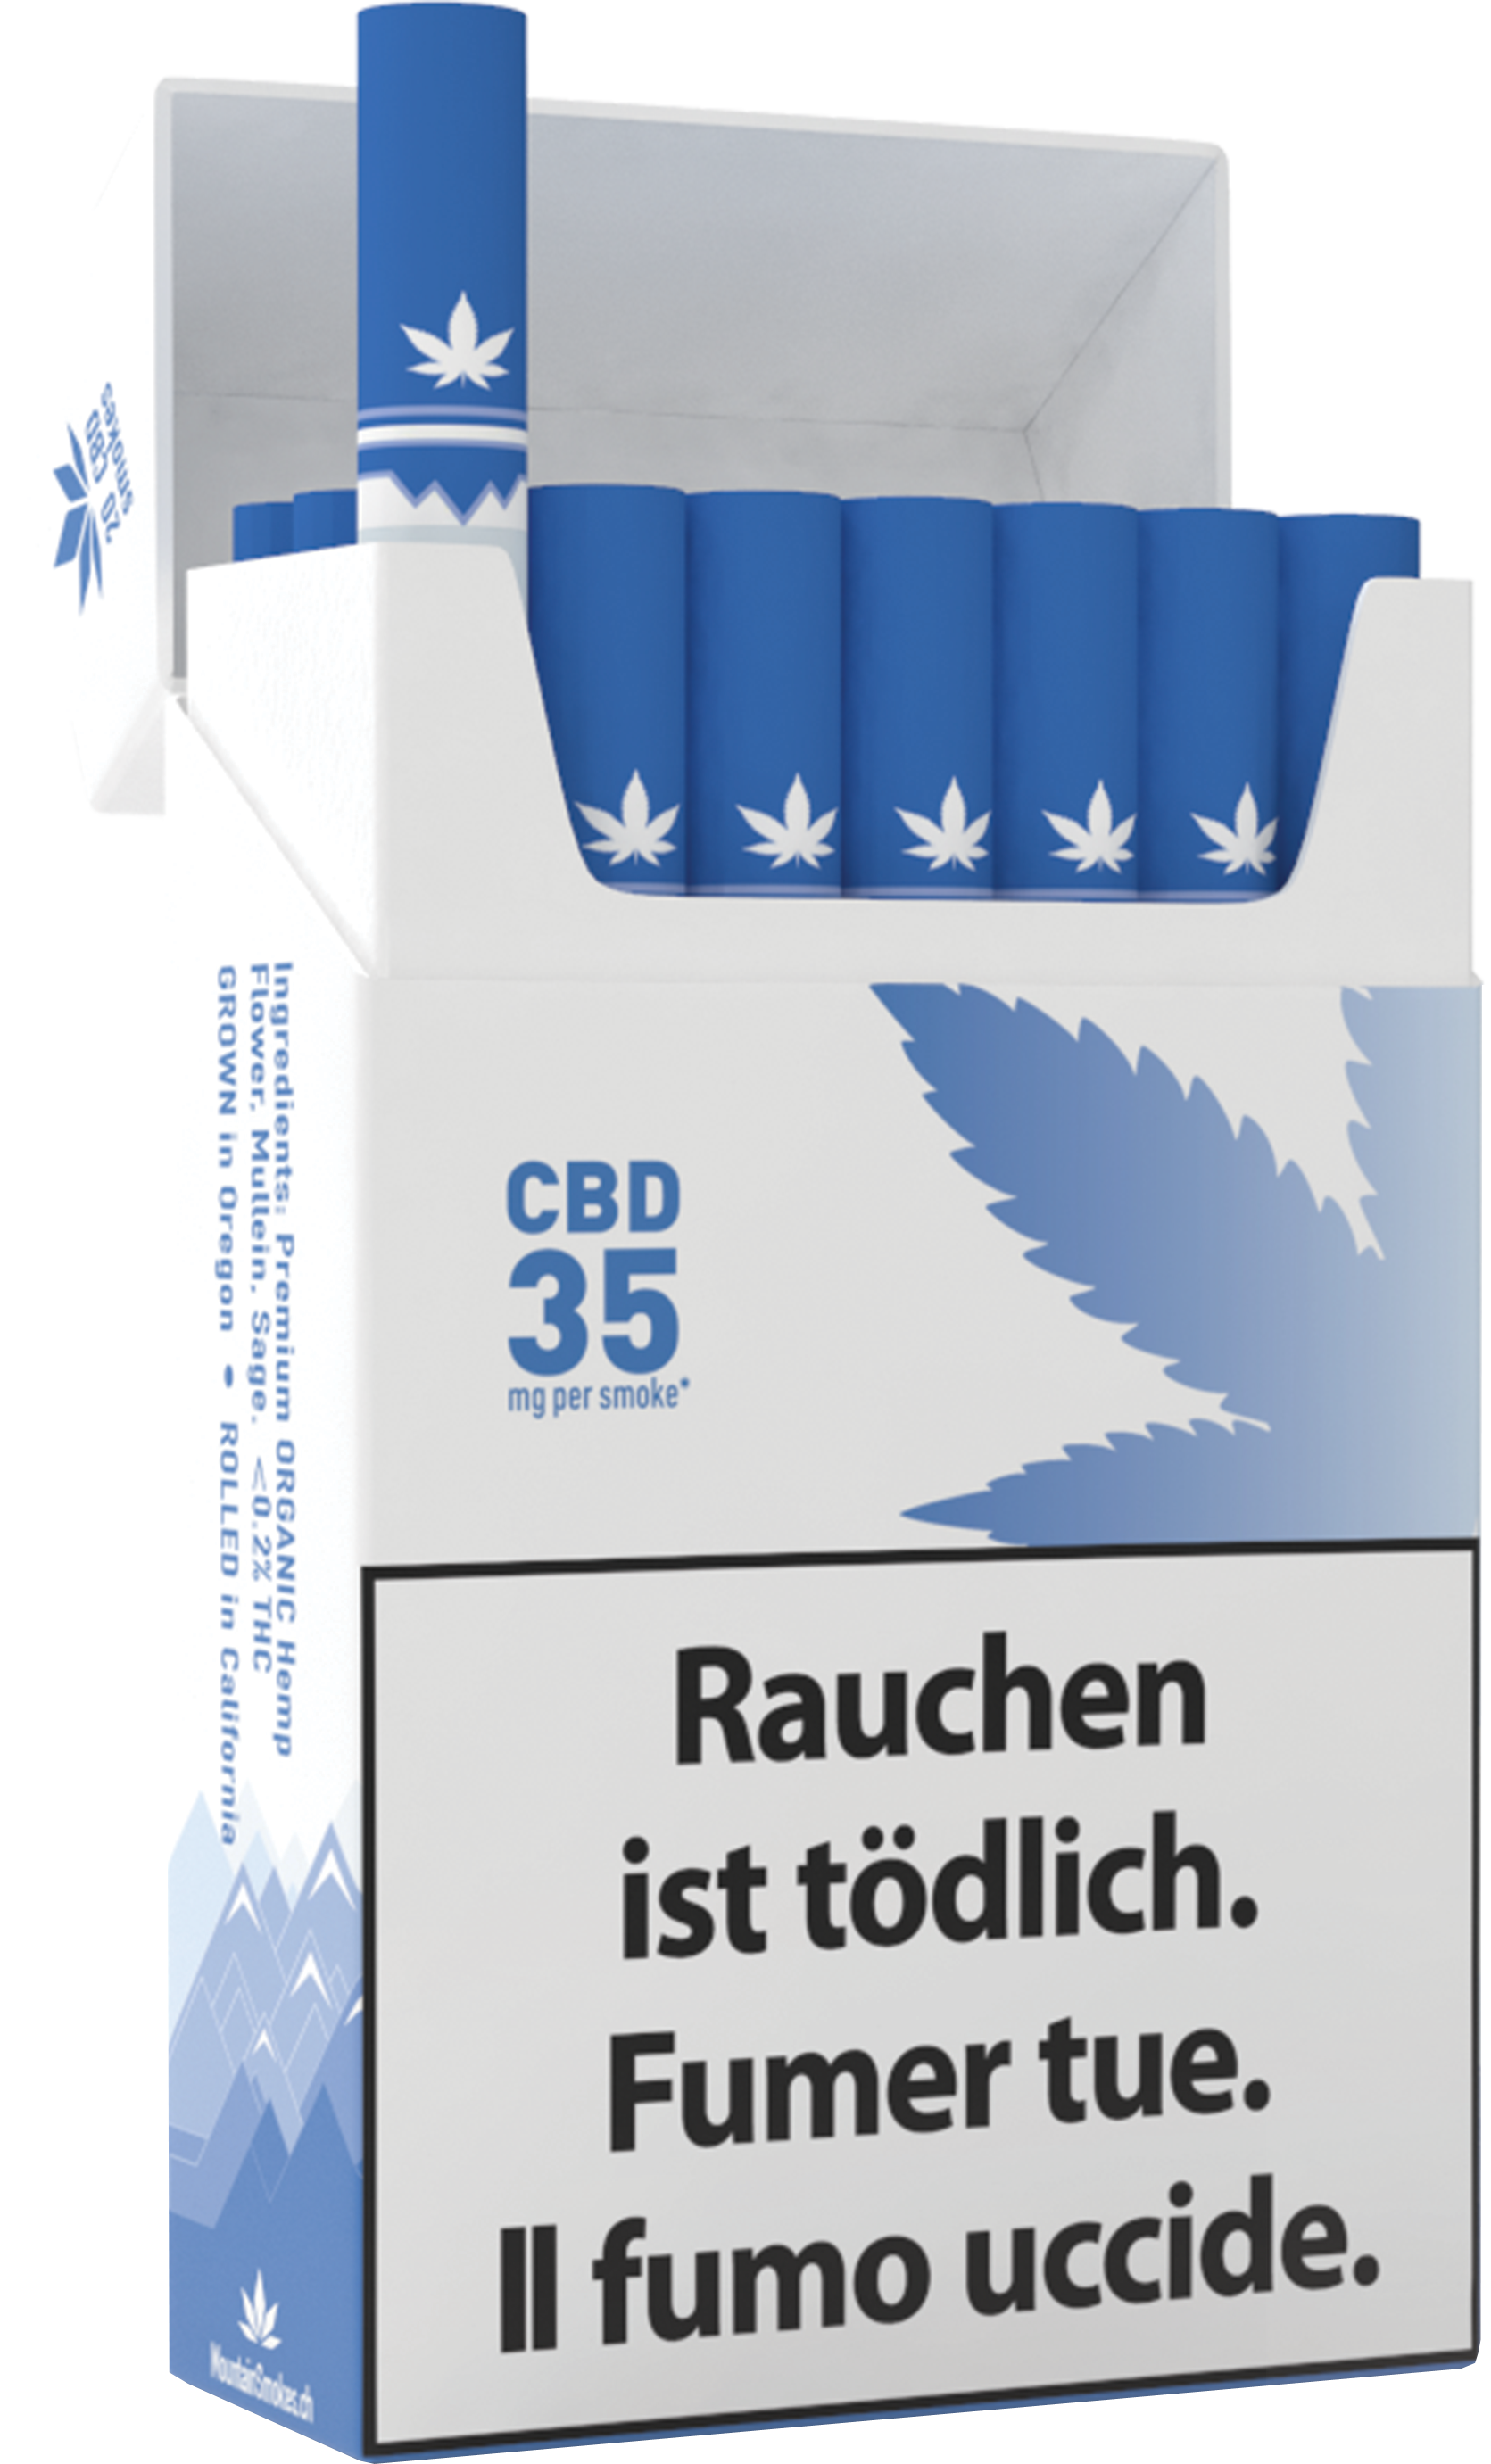 Image of Mountain Smokes CBD Zigaretten 35mg (1 Stk) bei CBD-Balance.ch